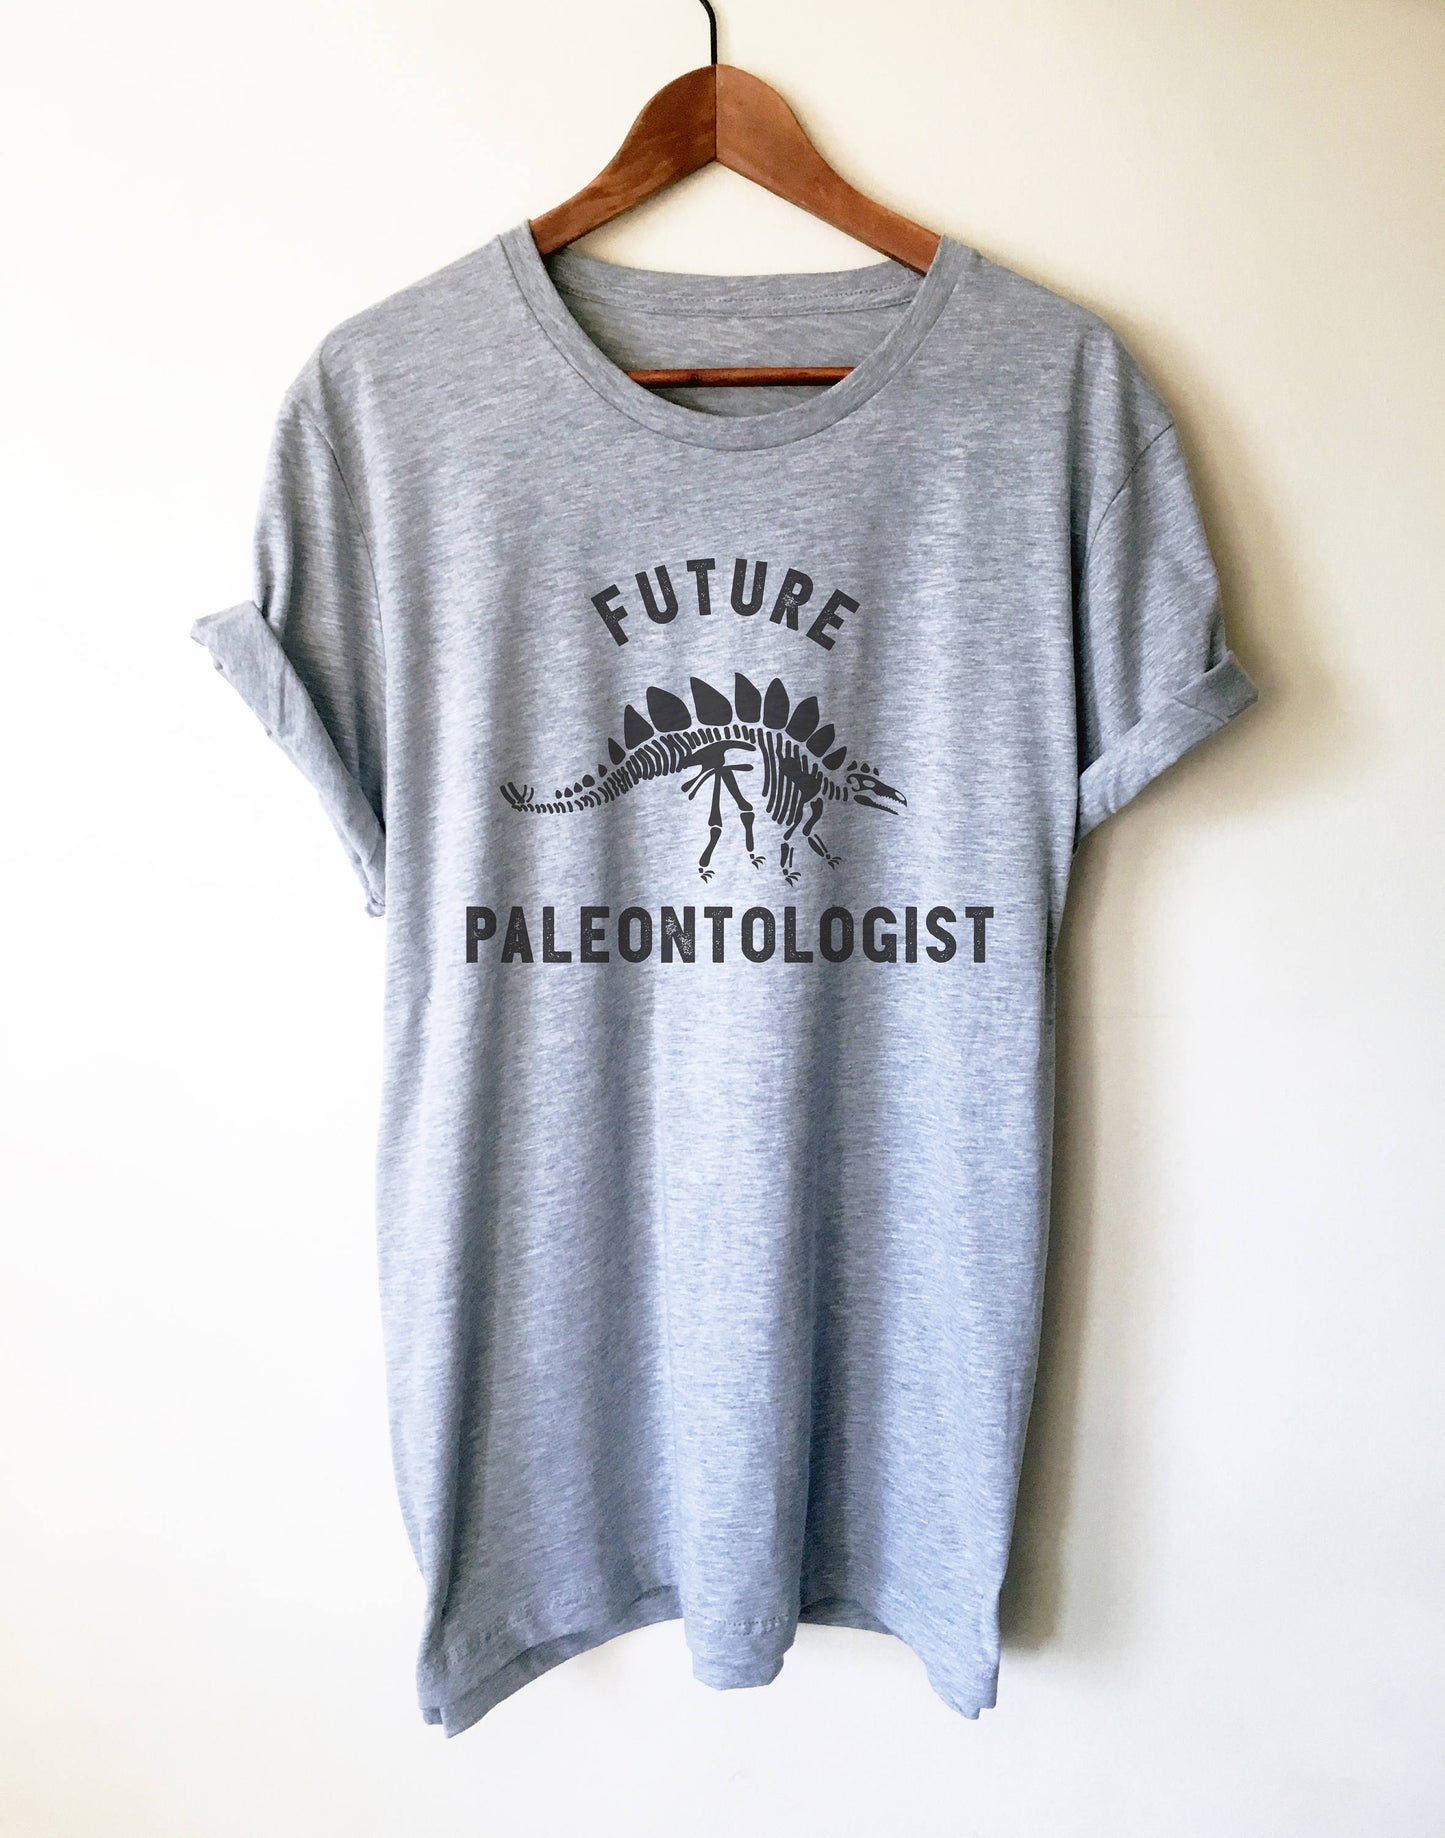 Future Paleontologist Unisex Shirt- Paleontology Shirt, Dinosaur Shirt, Dinosaurus Shirt, Geology Shirt, Geologist Shirt, Palaeontology Gift